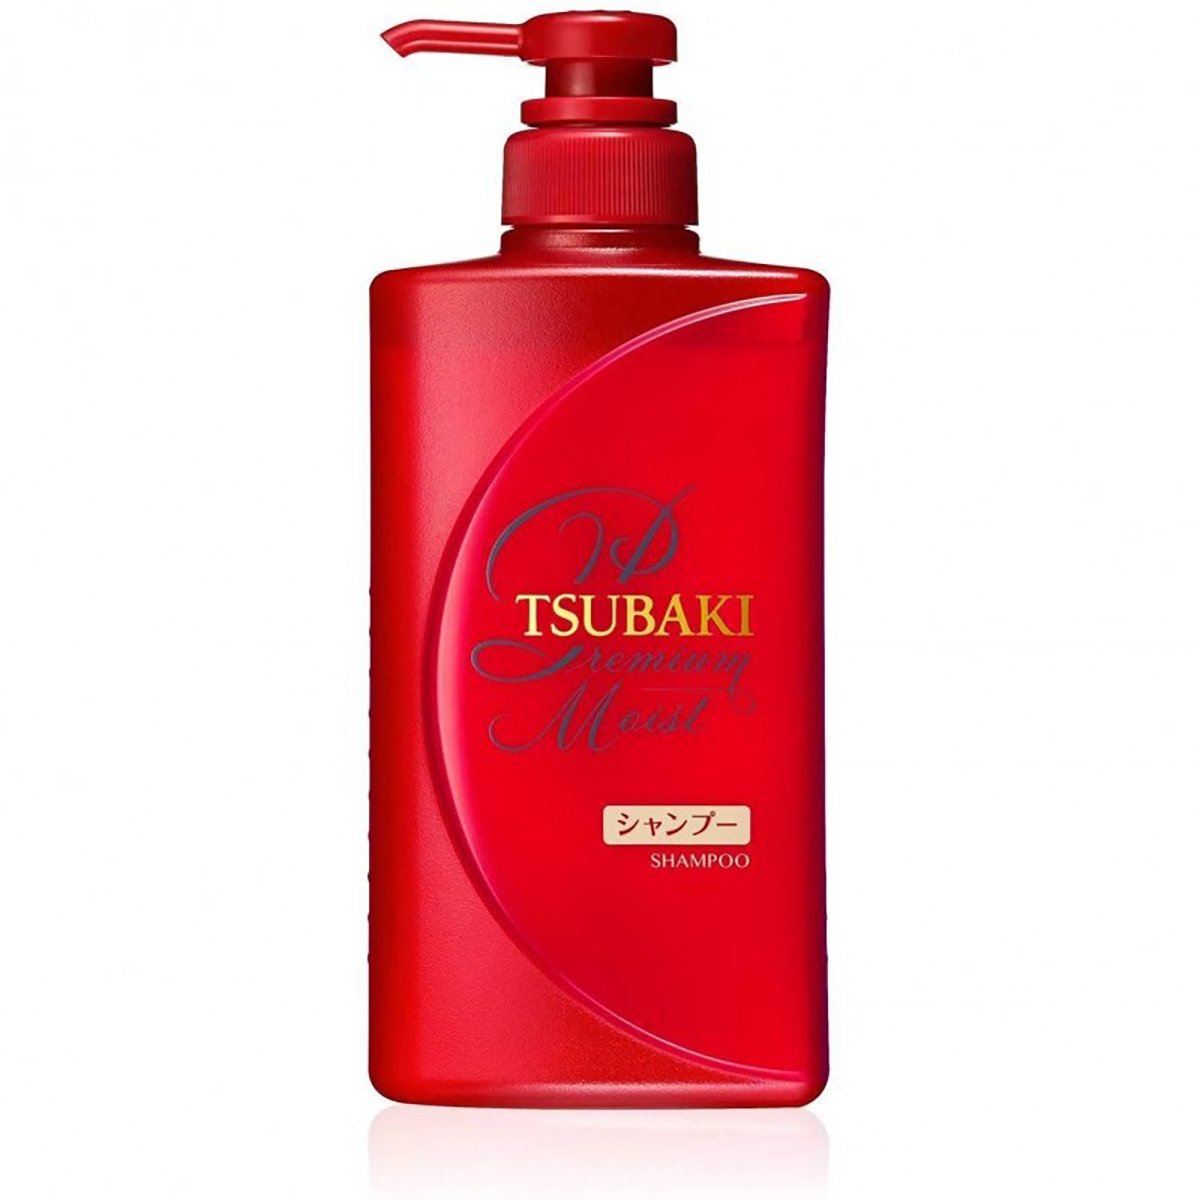 Tsubaki Shampoo Premium Moist 490ml